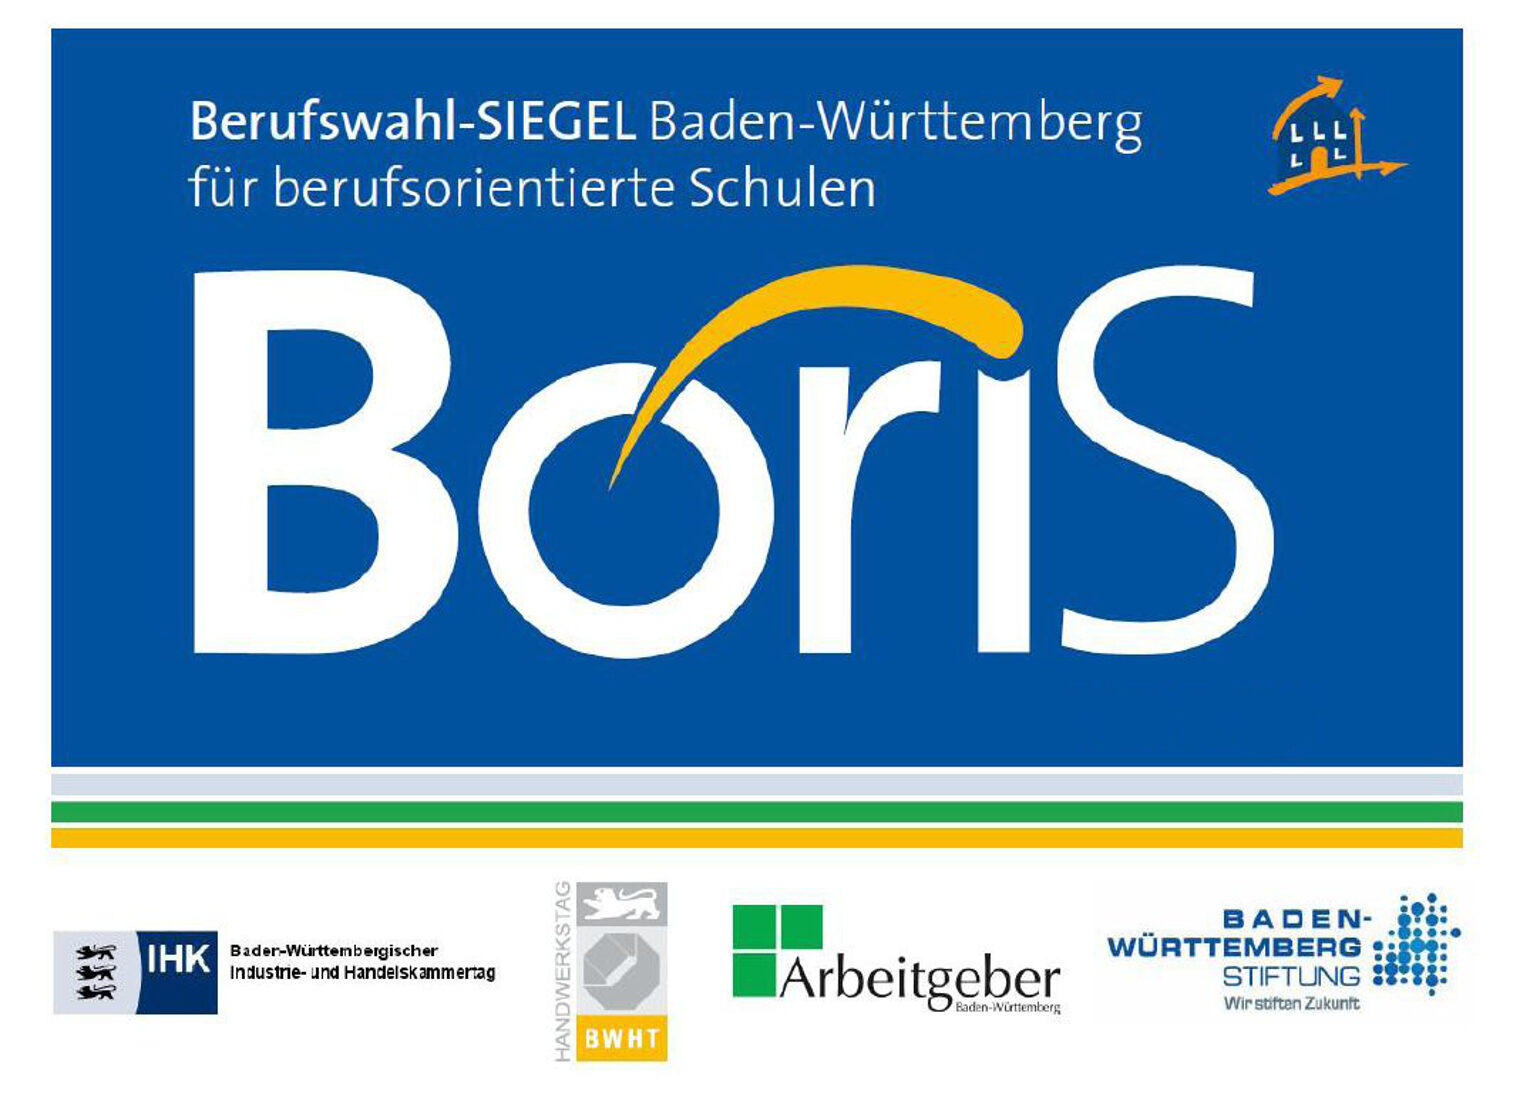 Blaues Schild mit weißer Schrift; darauf steht BoriS Berufswahlsiegel Baden Württemberg für berufsorientierte Schulen. Darunter diverse Logos von beteiligten Organisationen. 